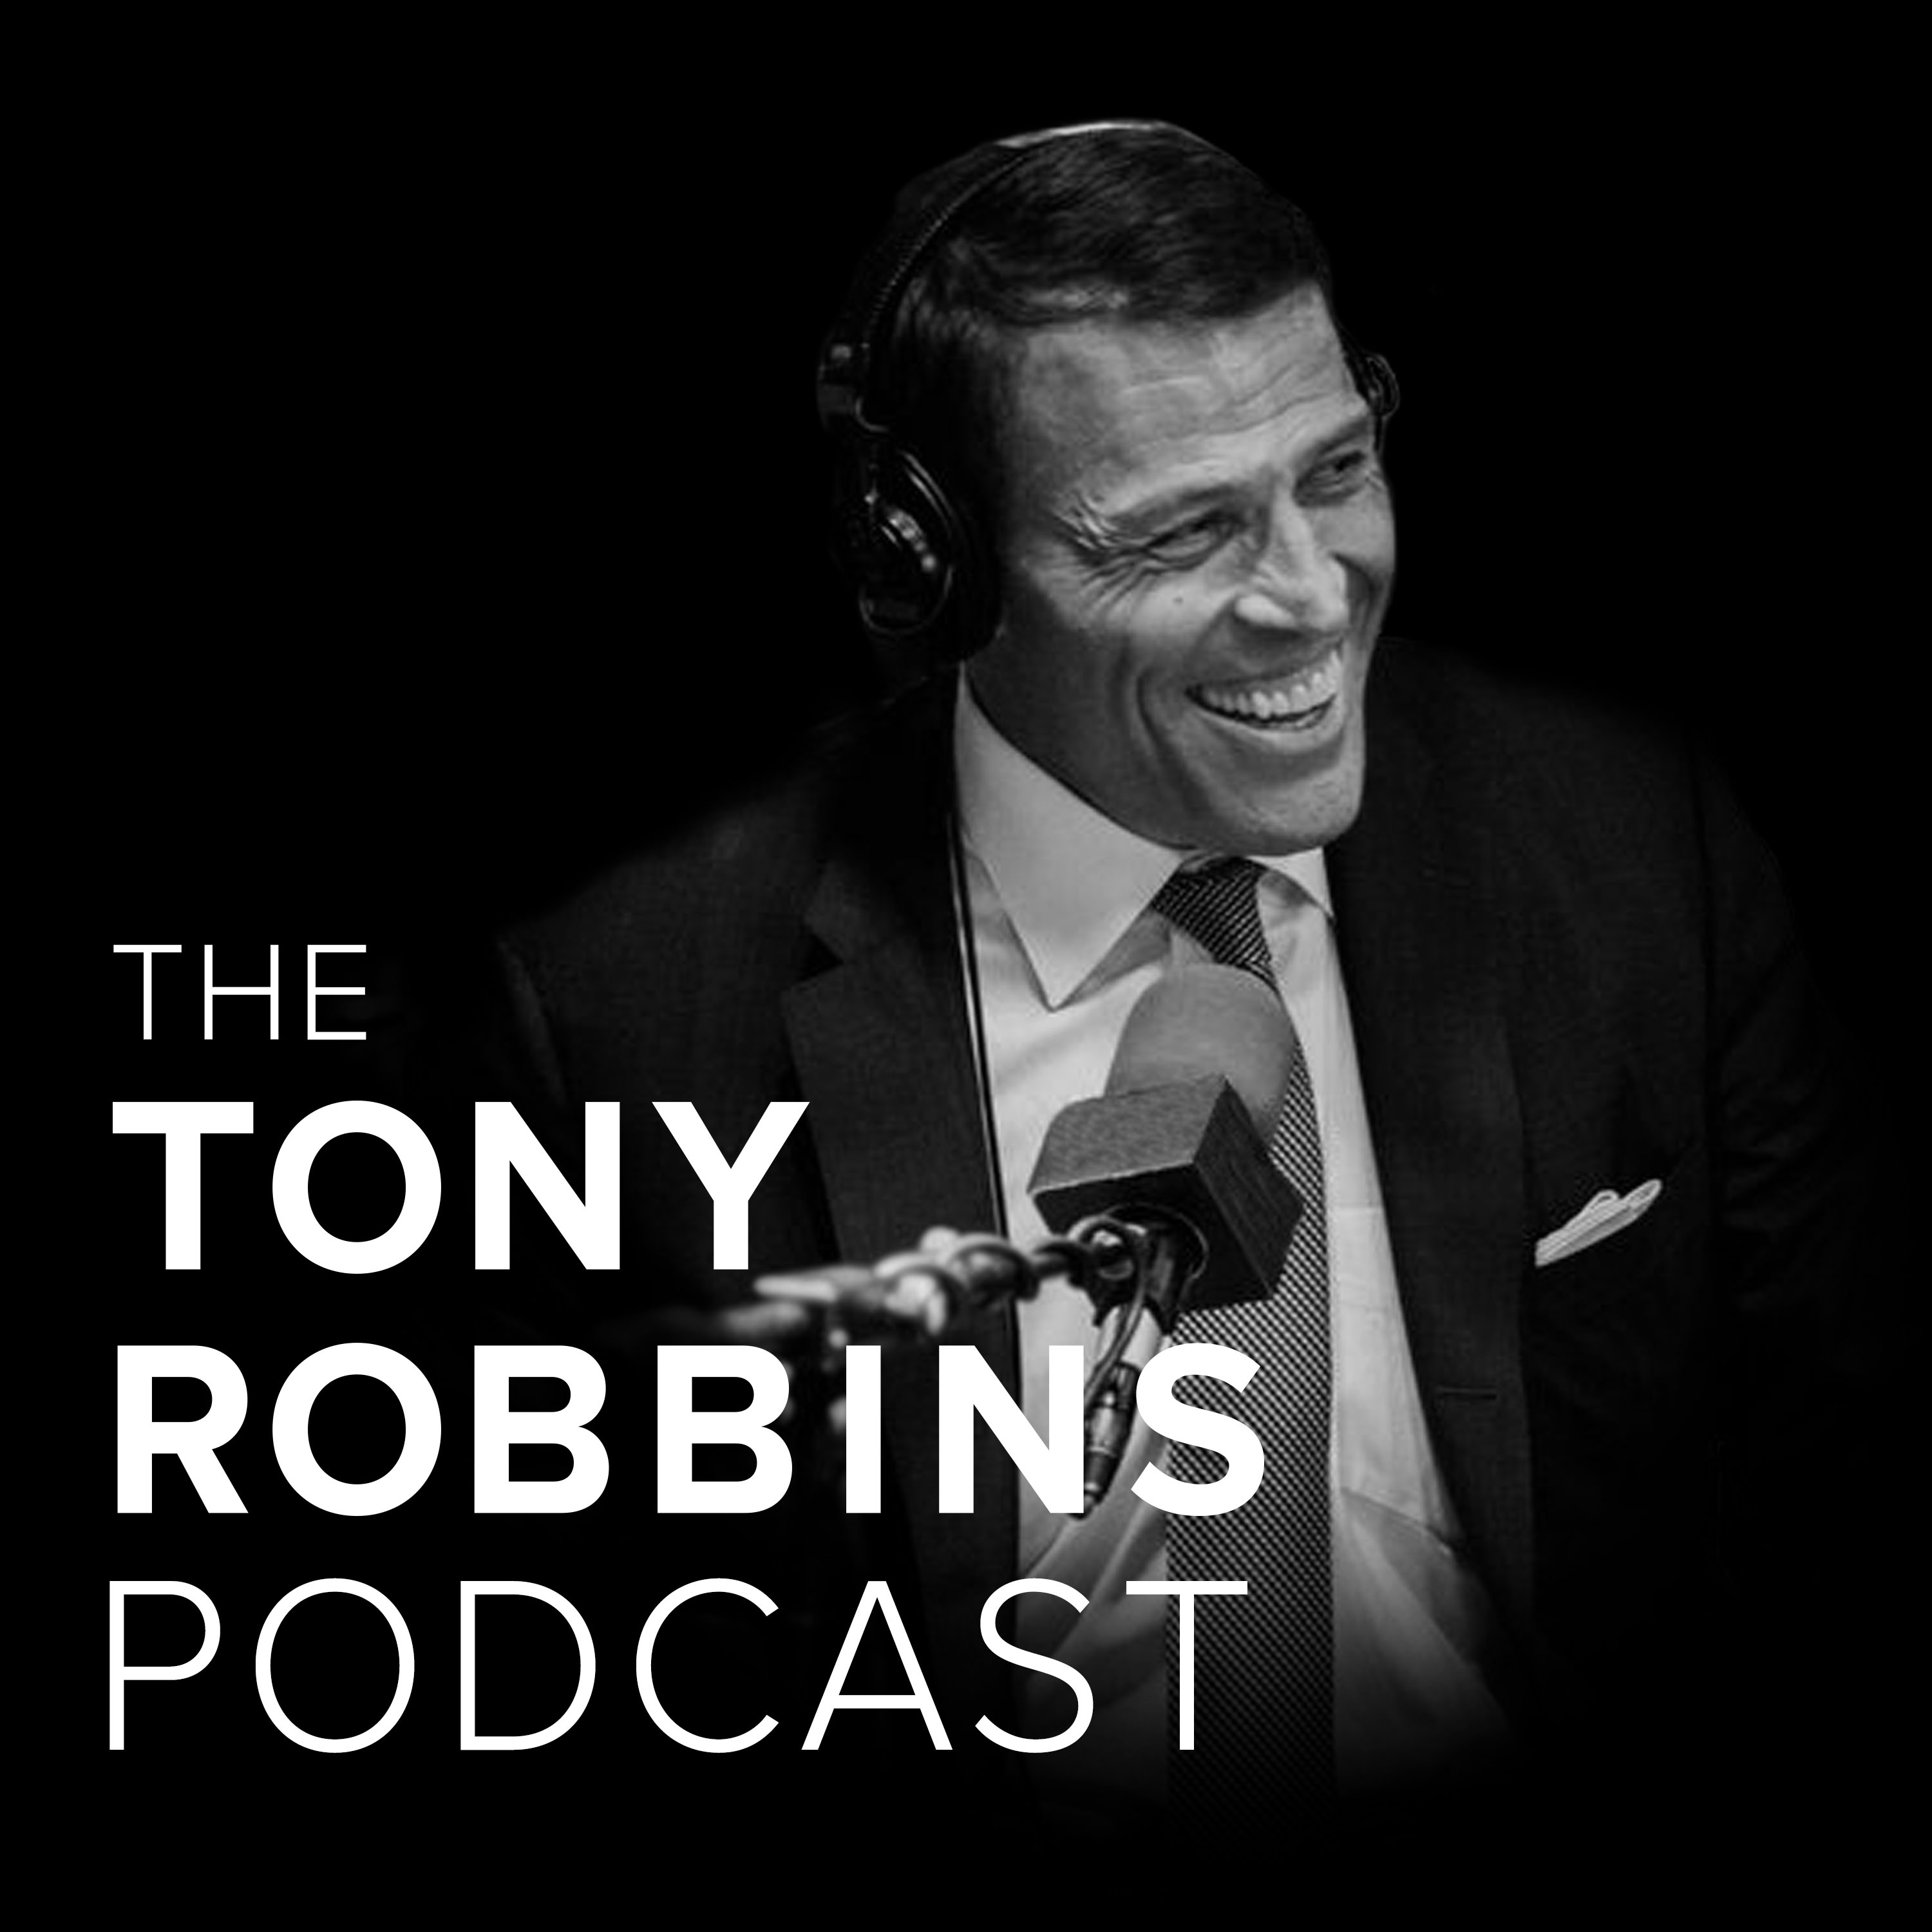 2) The Tony Robbins Podcast